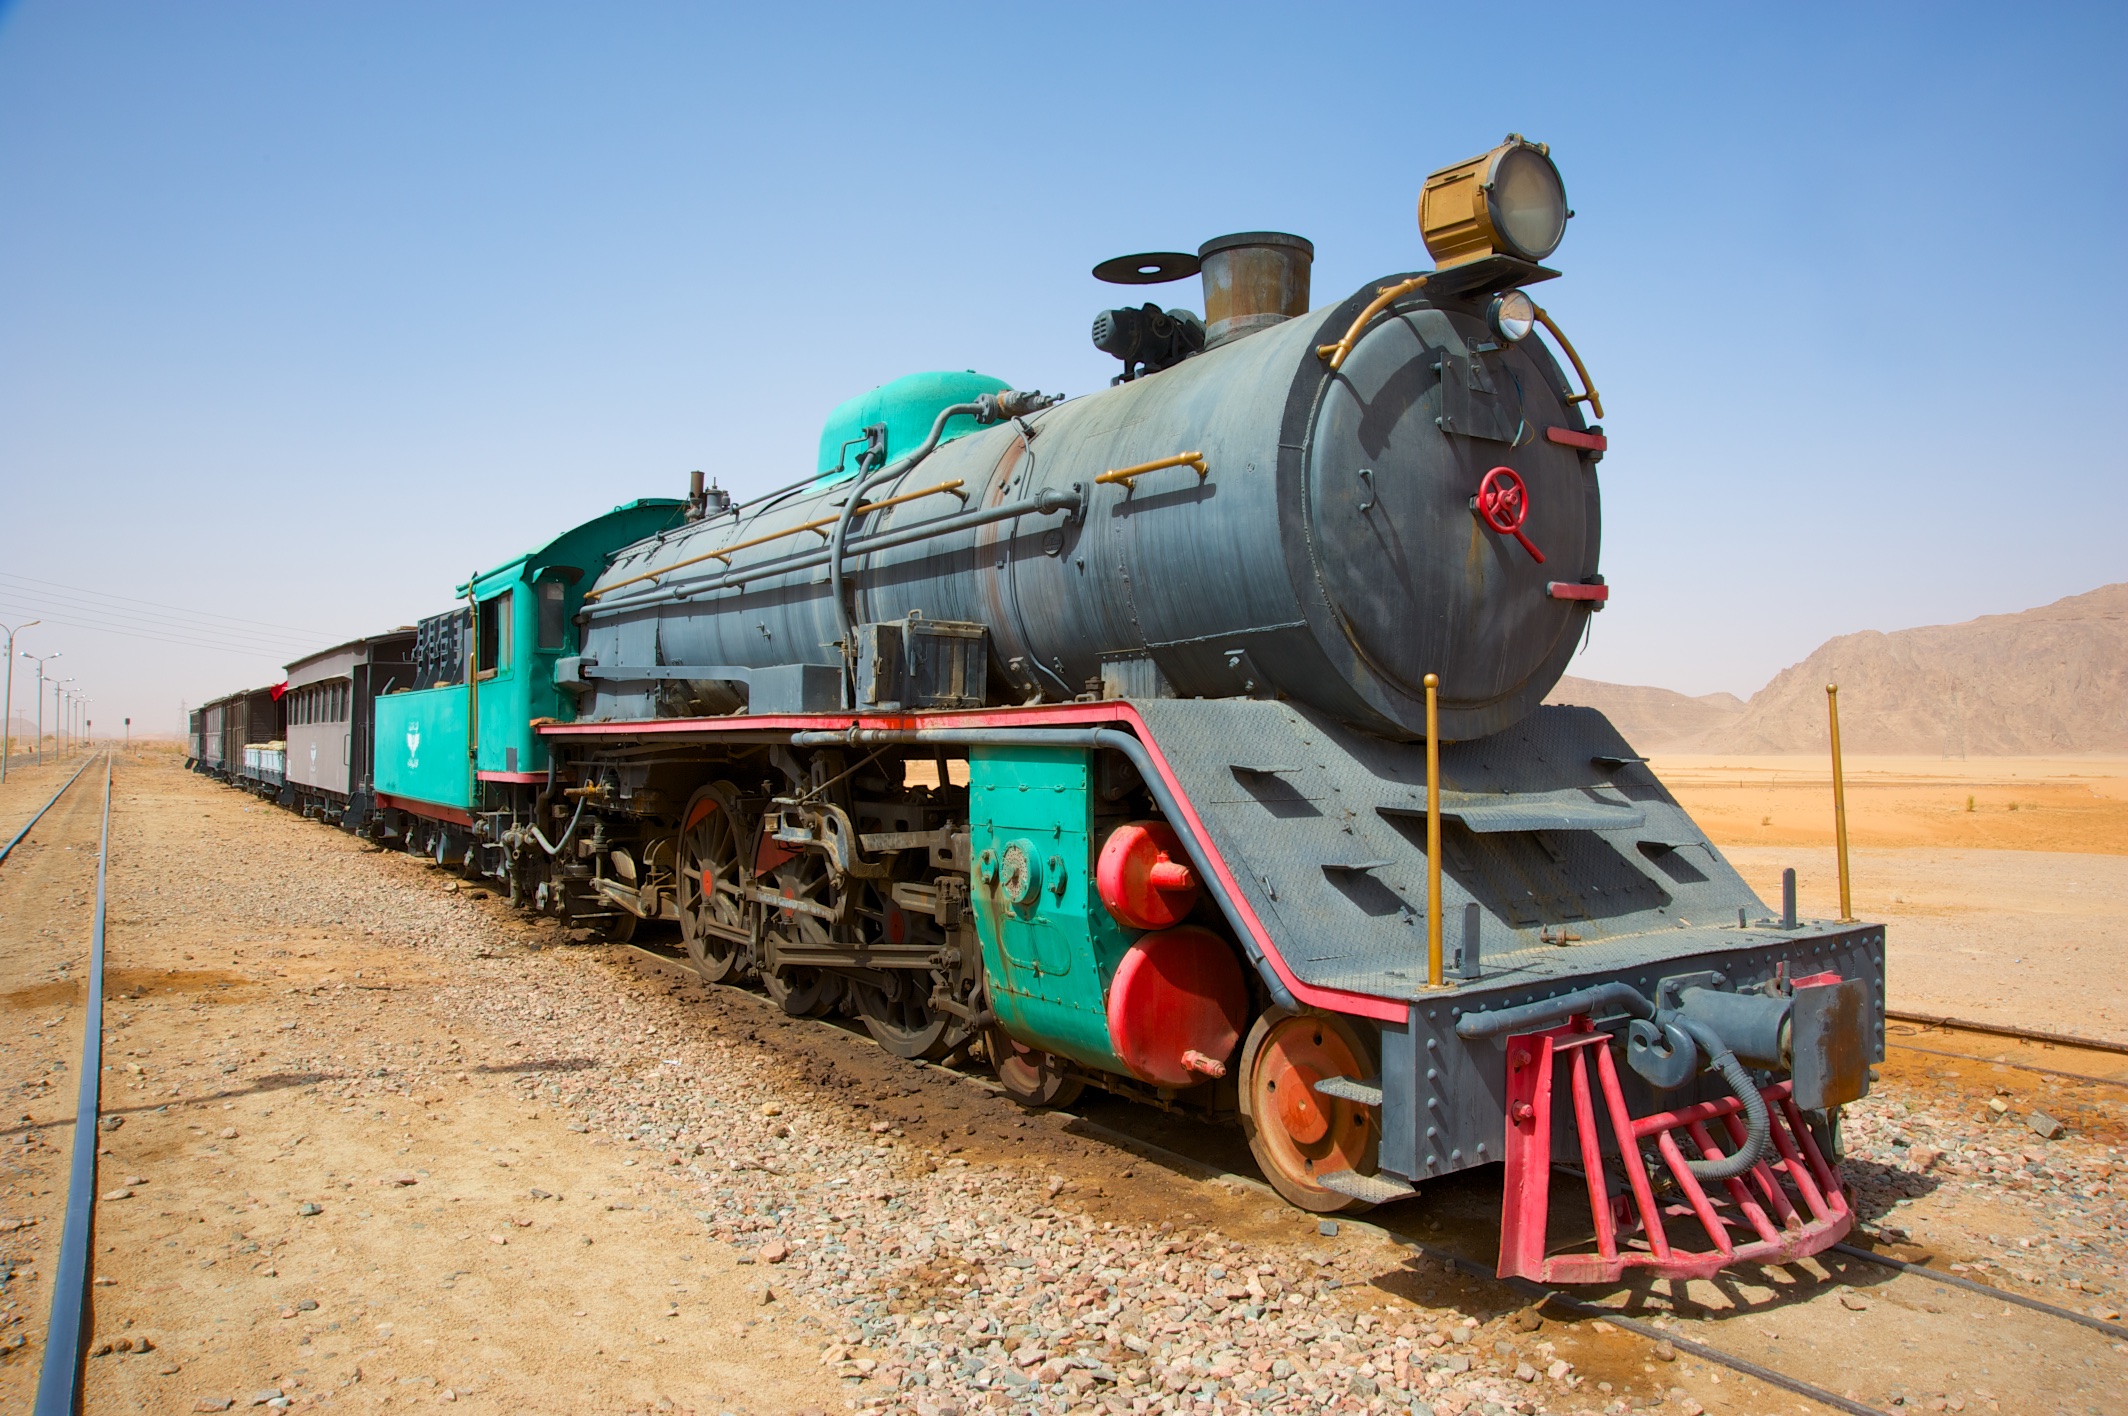  Train used in Lawrence of Arabia, near Wadi Rum 